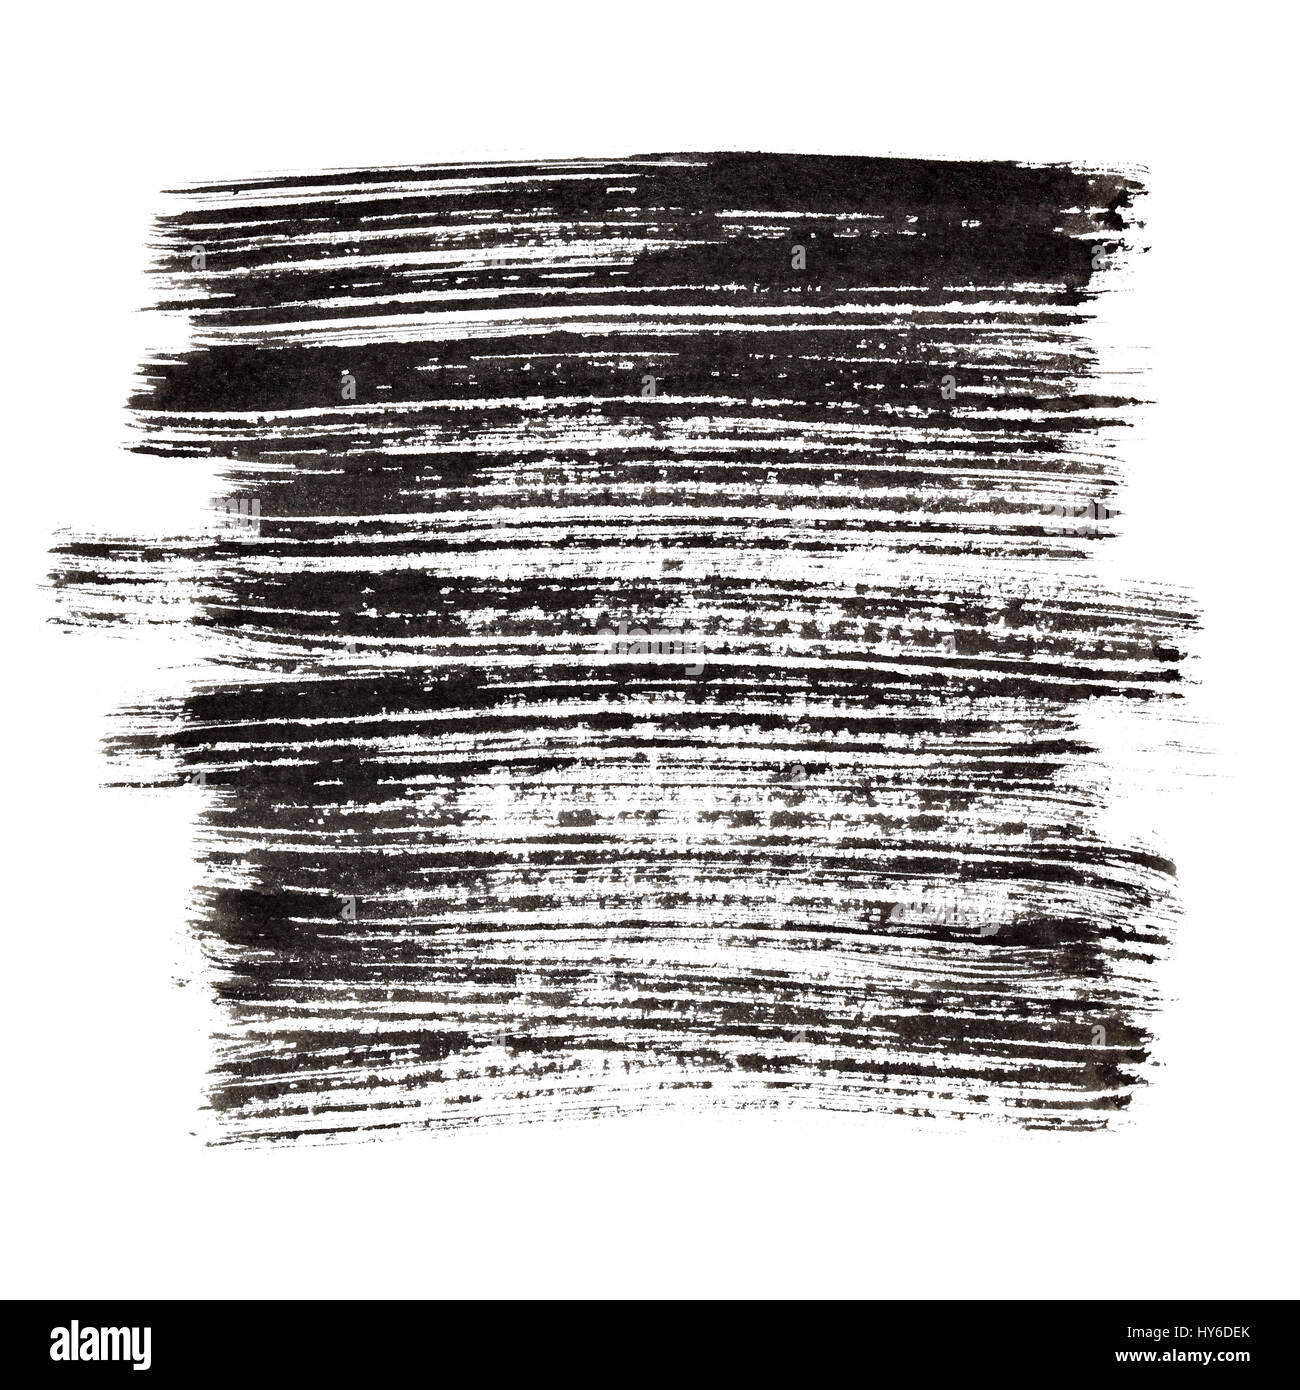 Les coups de pinceau noir. Grunge abstract background Banque D'Images